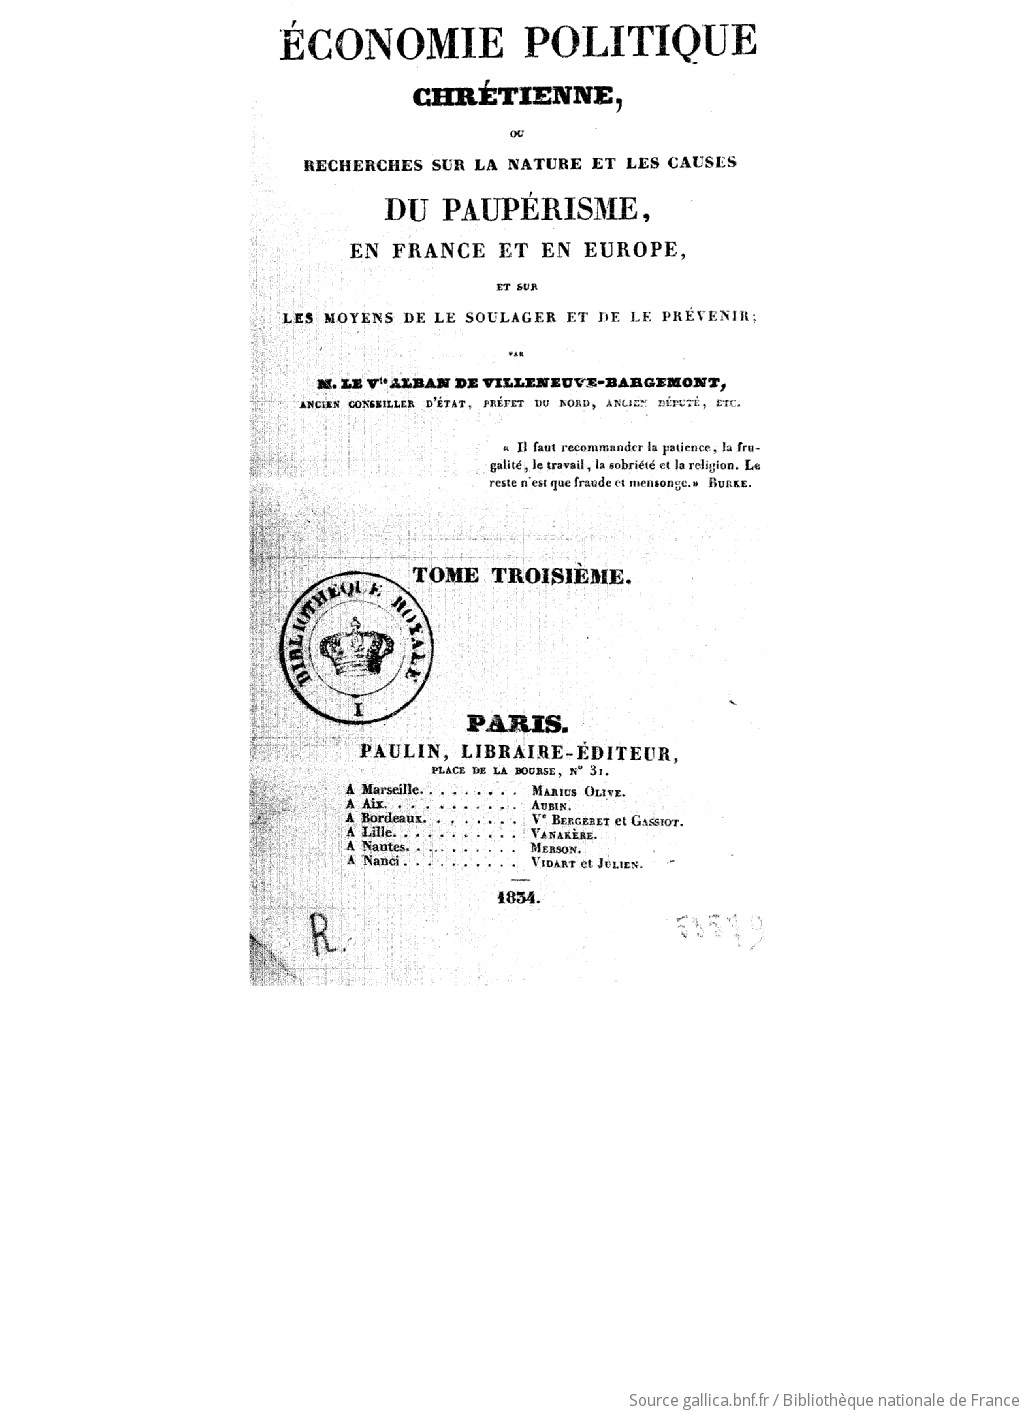 VILLENEUVE-BAEconomie politique chrétienne, 1834/初版